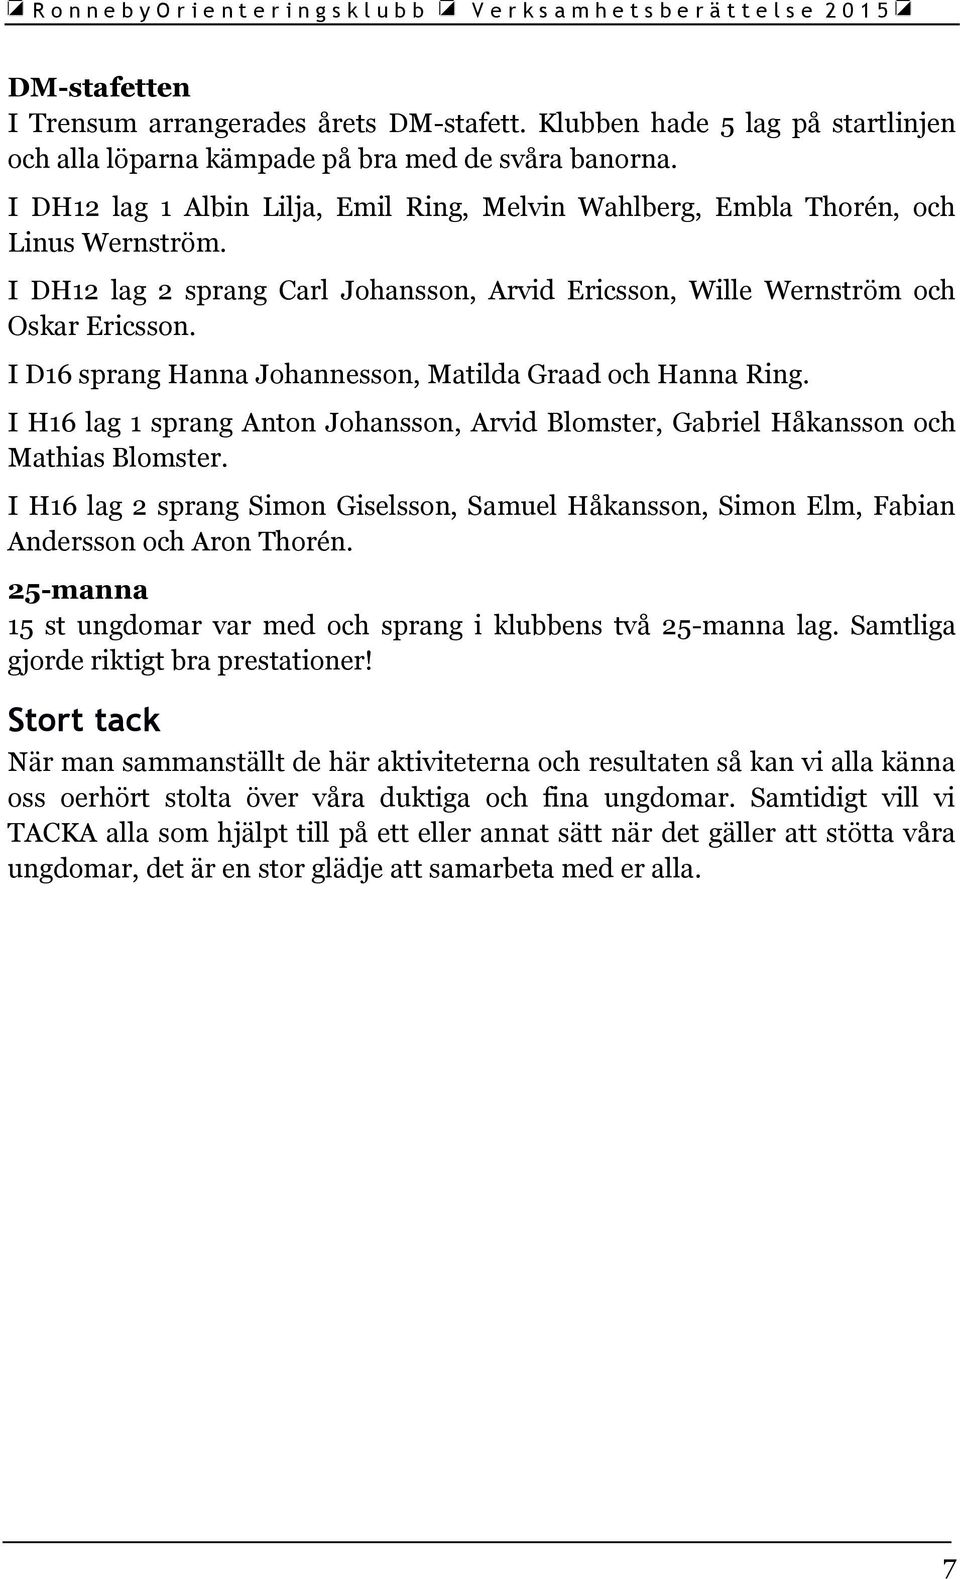 I D16 sprang Hanna Johannesson, Matilda Graad och Hanna Ring. I H16 lag 1 sprang Anton Johansson, Arvid Blomster, Gabriel Håkansson och Mathias Blomster.